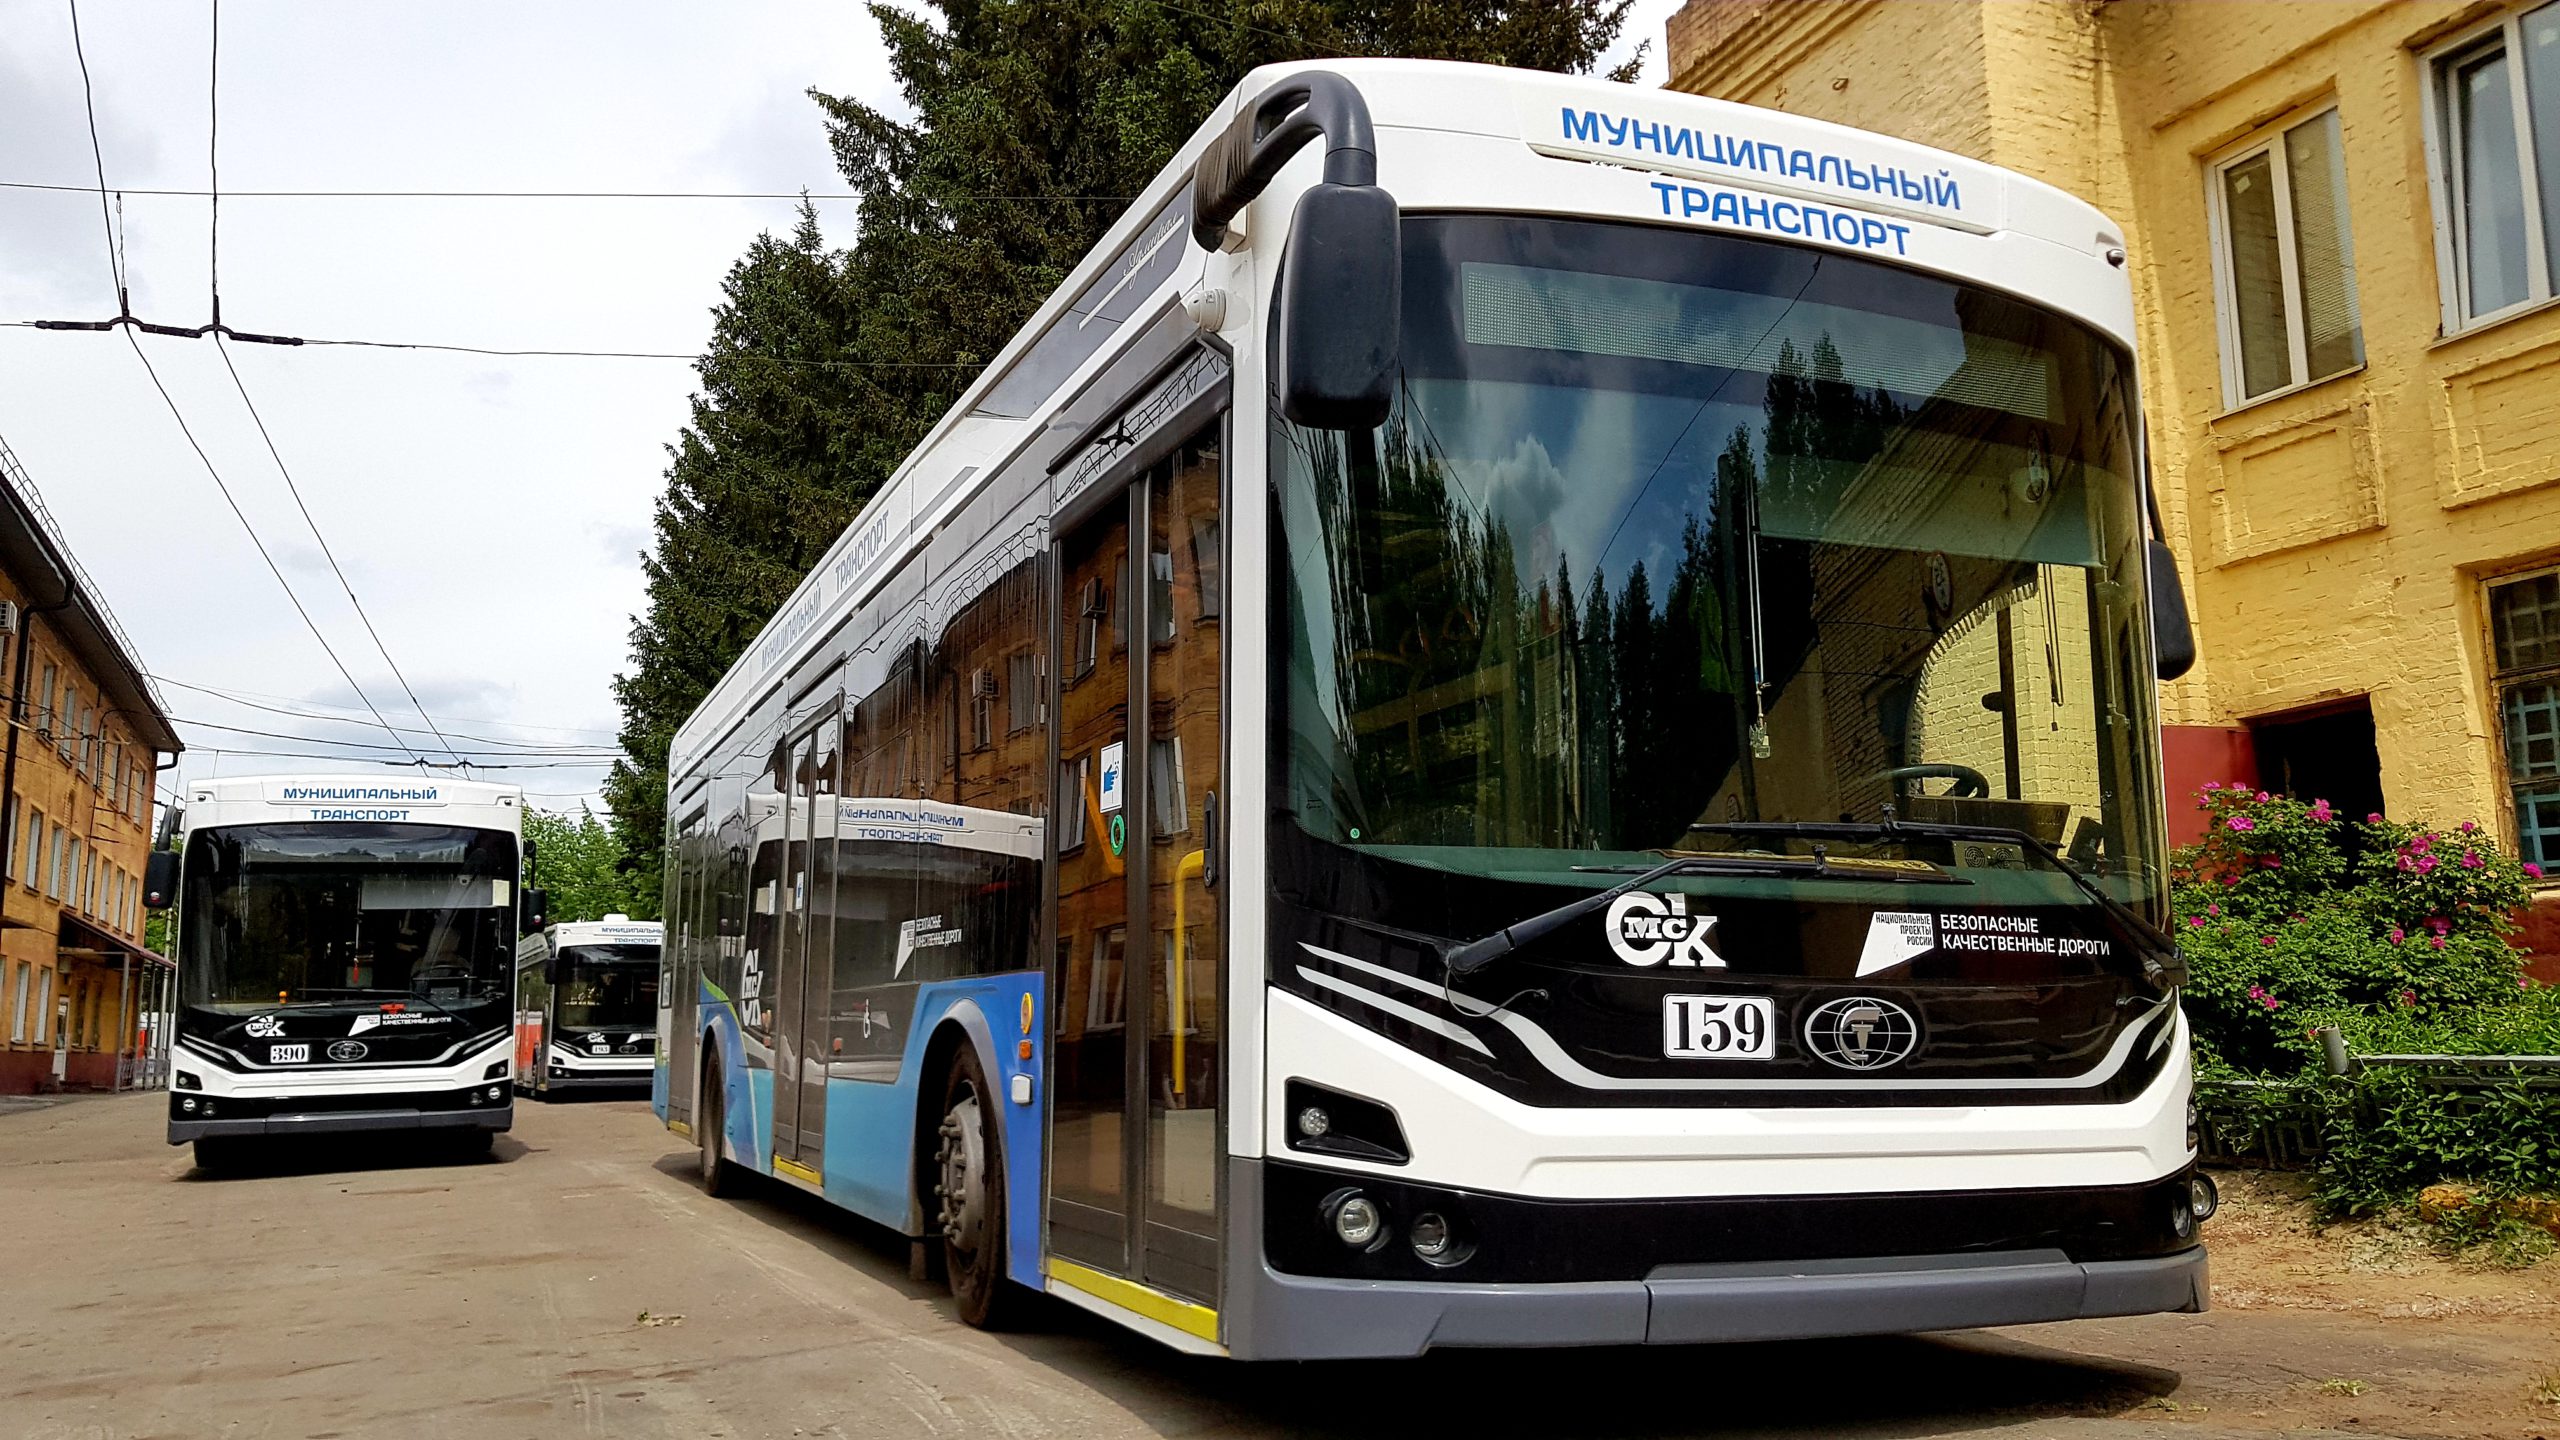 Read more about the article Омичи всё чаще выбирают троллейбусы «Адмиралы» как средство передвижения по городу